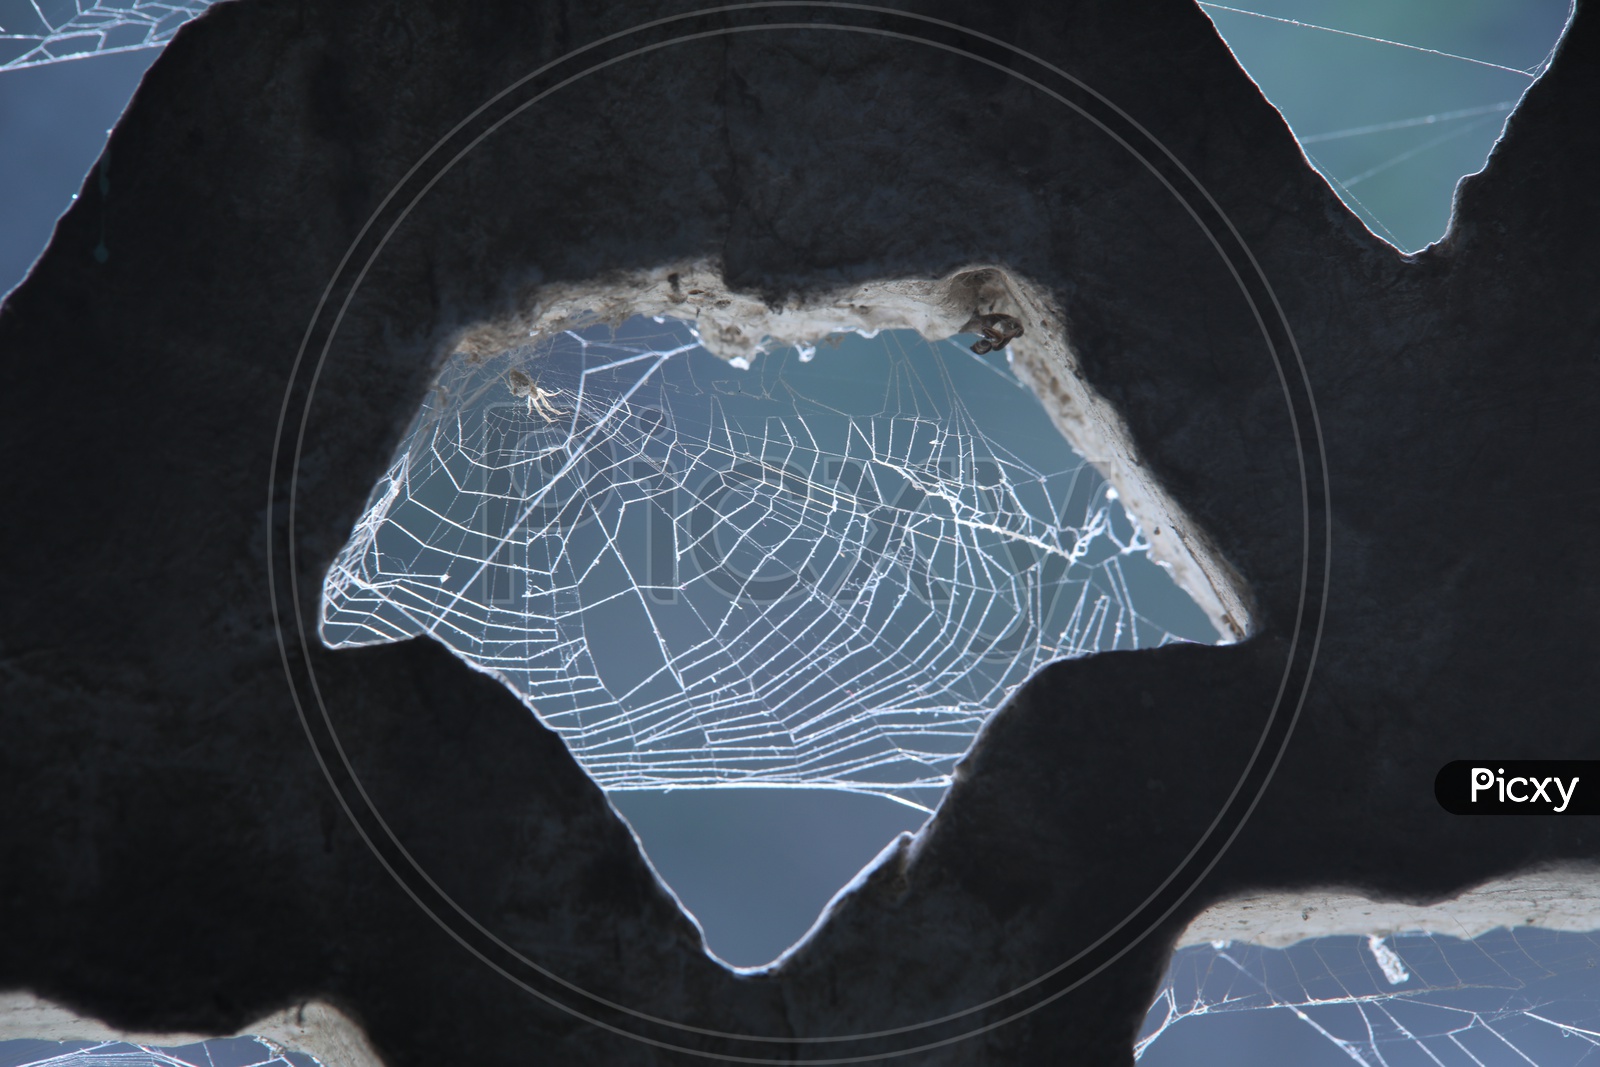 Spyder web